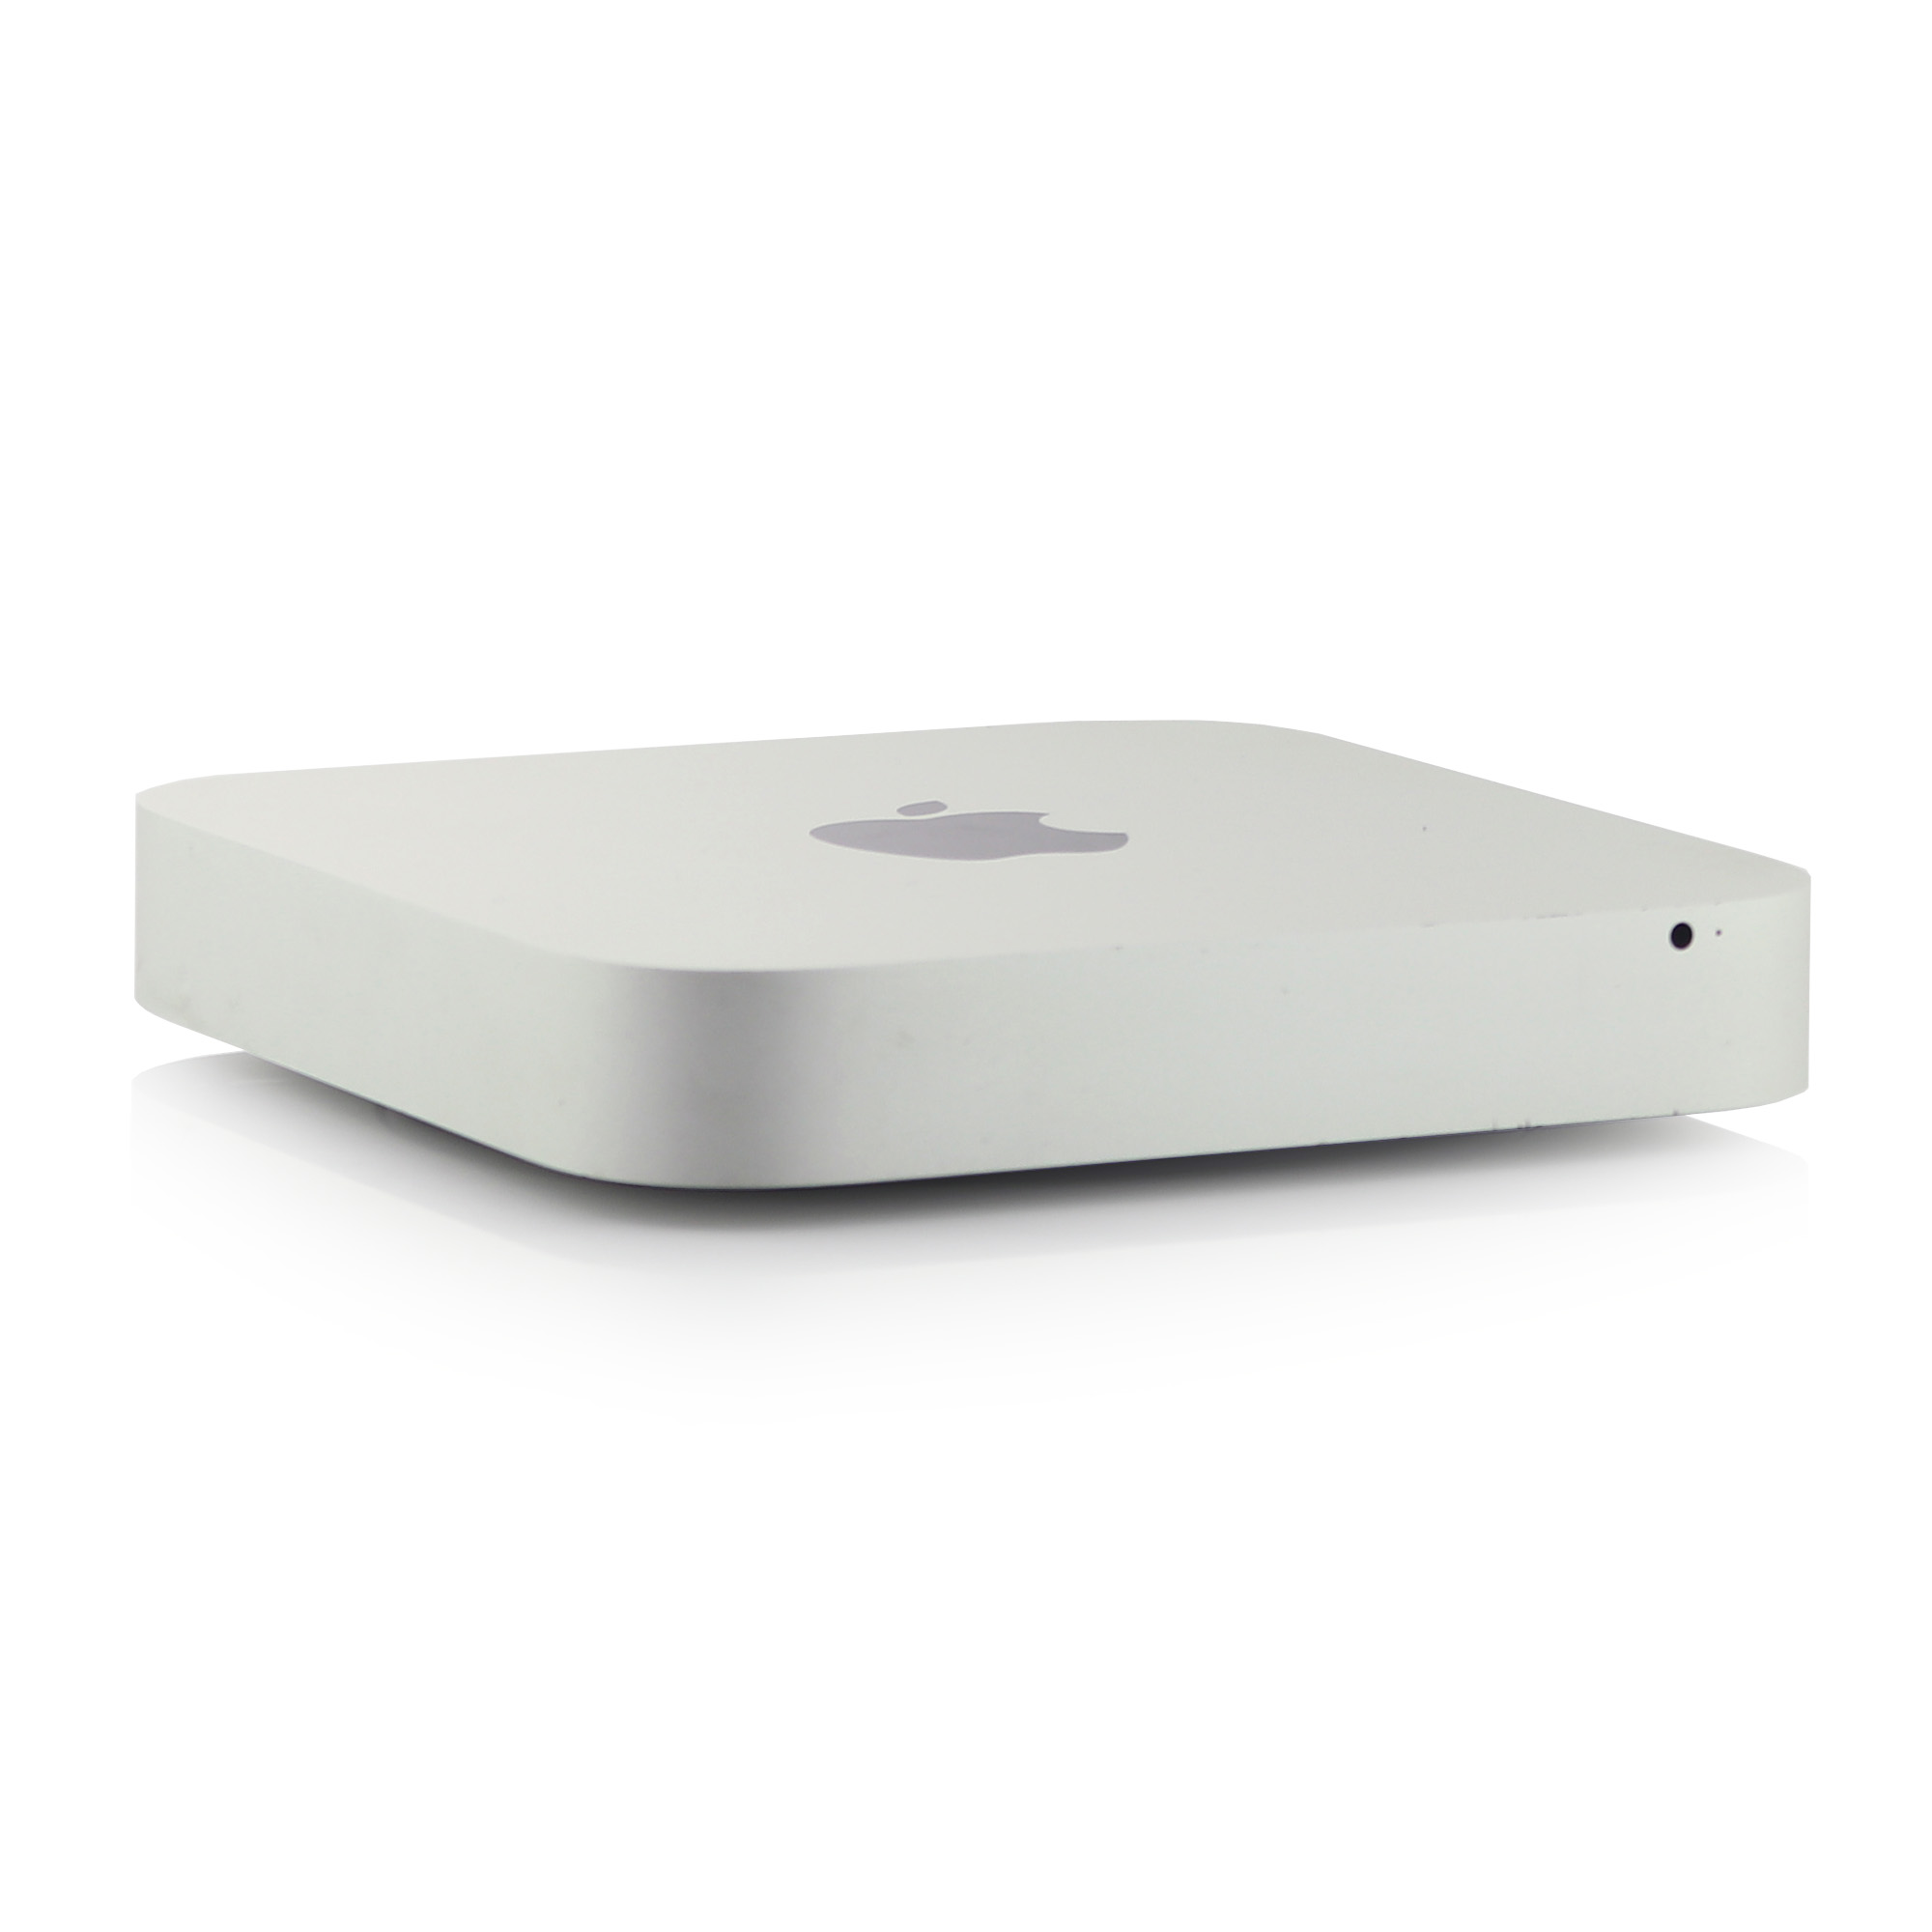 2014 Apple Mac mini Intel i5 1.40 GHz 2-core 4GB 256GB - 